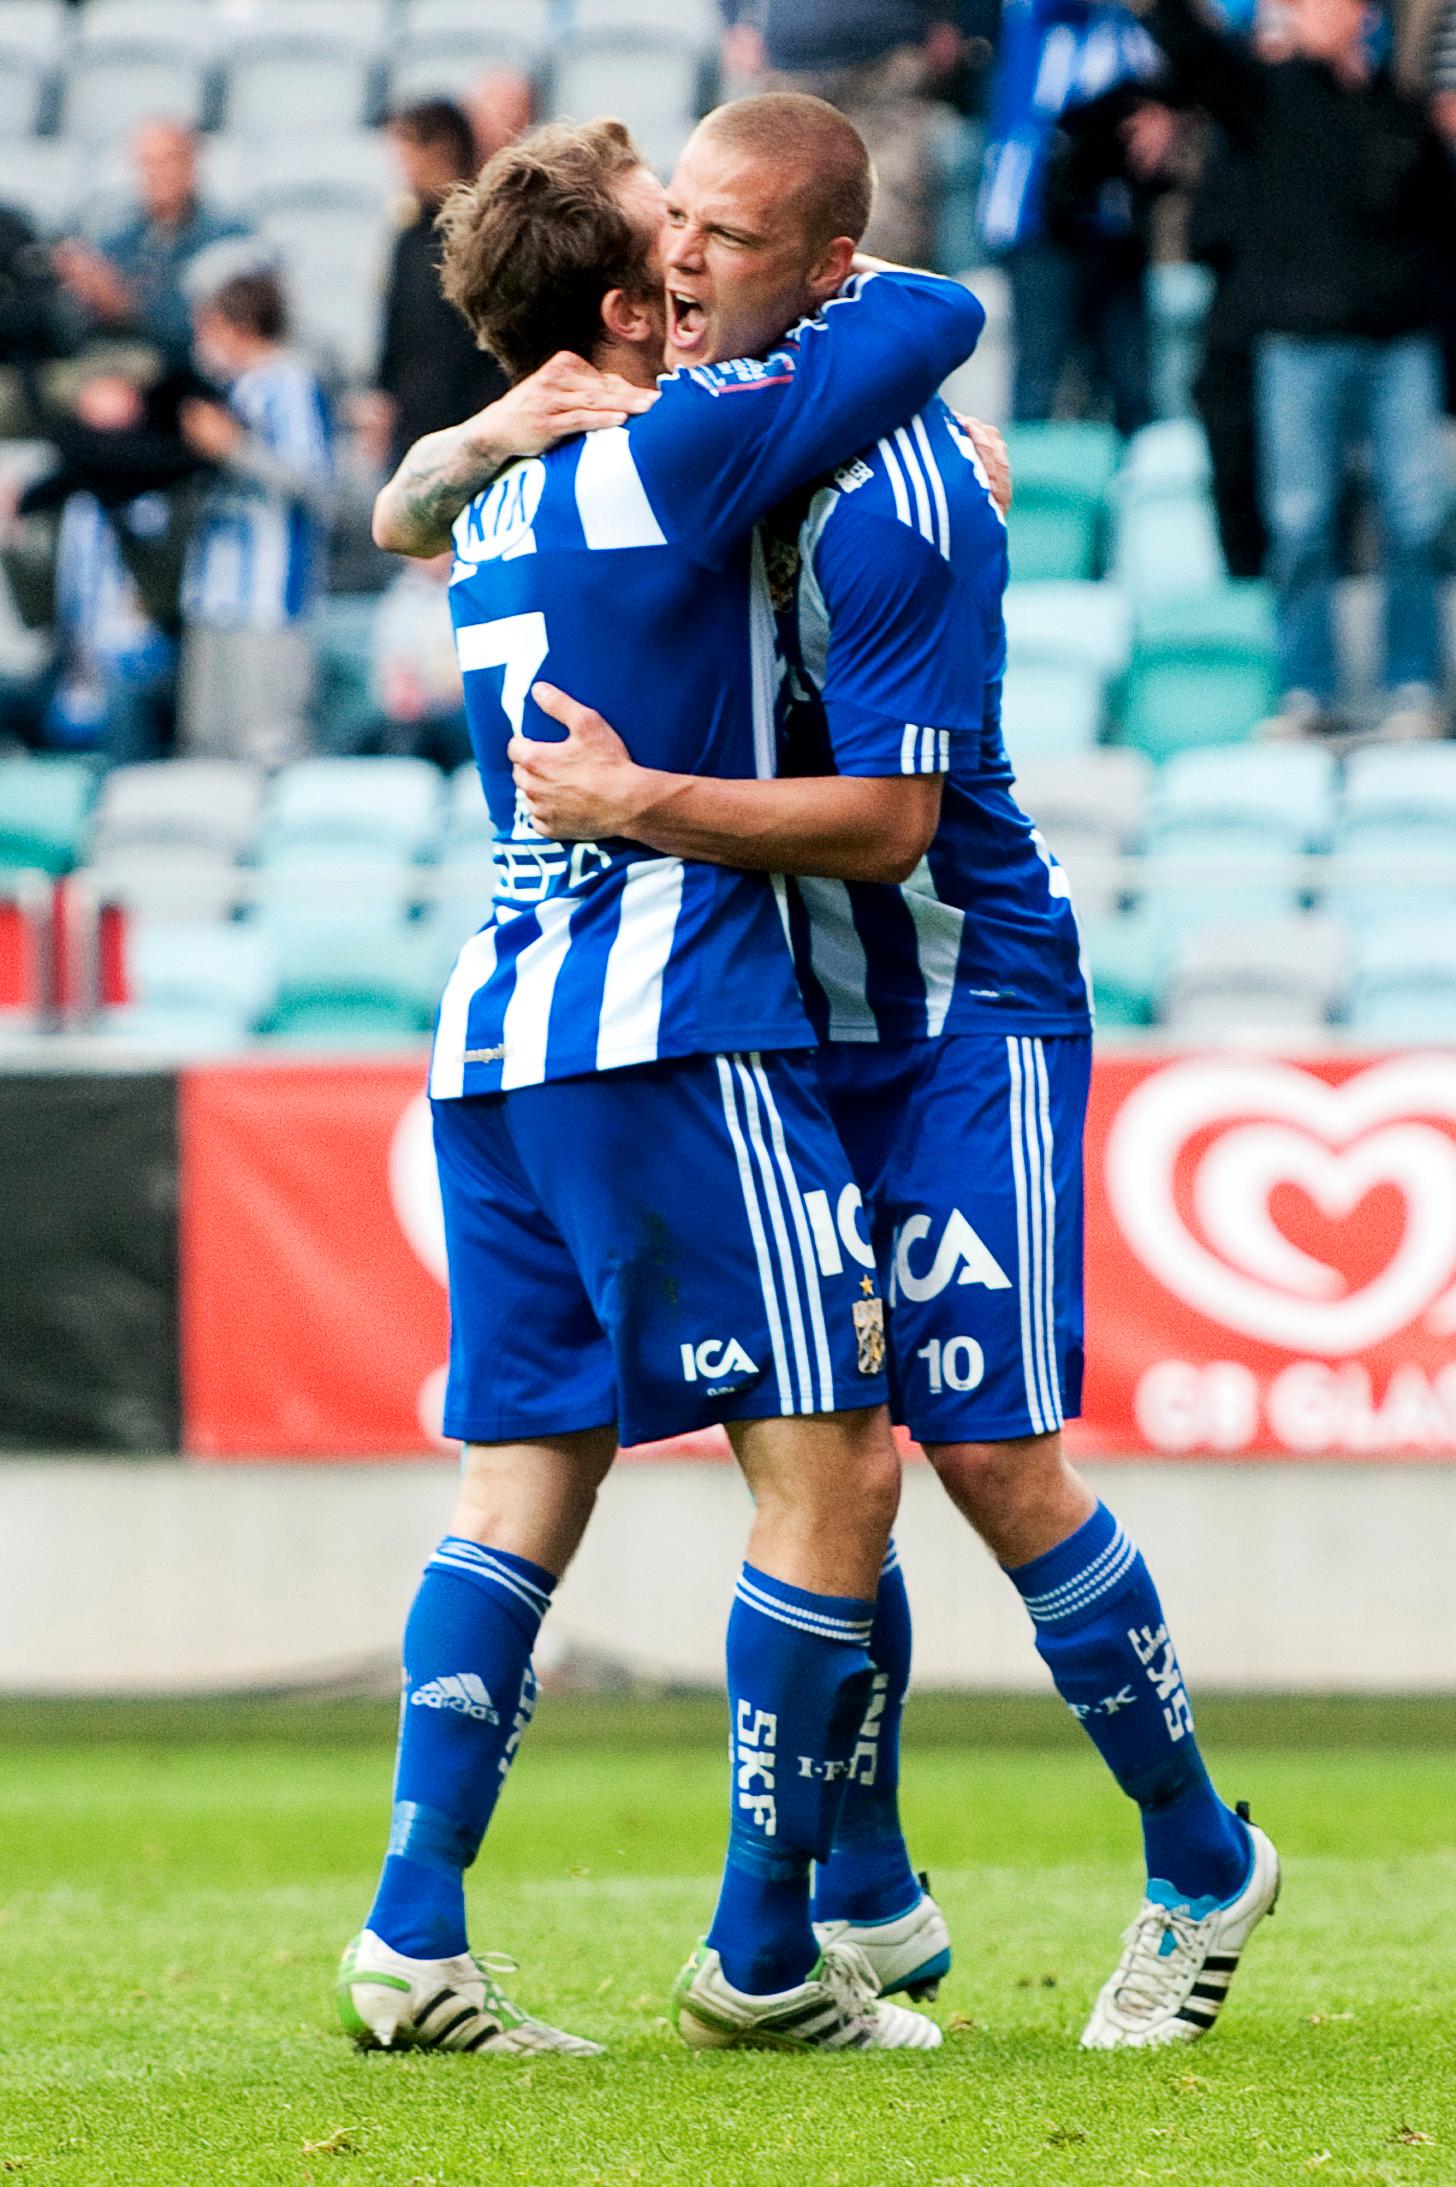 Poängräddare Ragnar Sigurdsson klappas om av Tobias Hysén efter 1-1-målet mot Trelleborg.